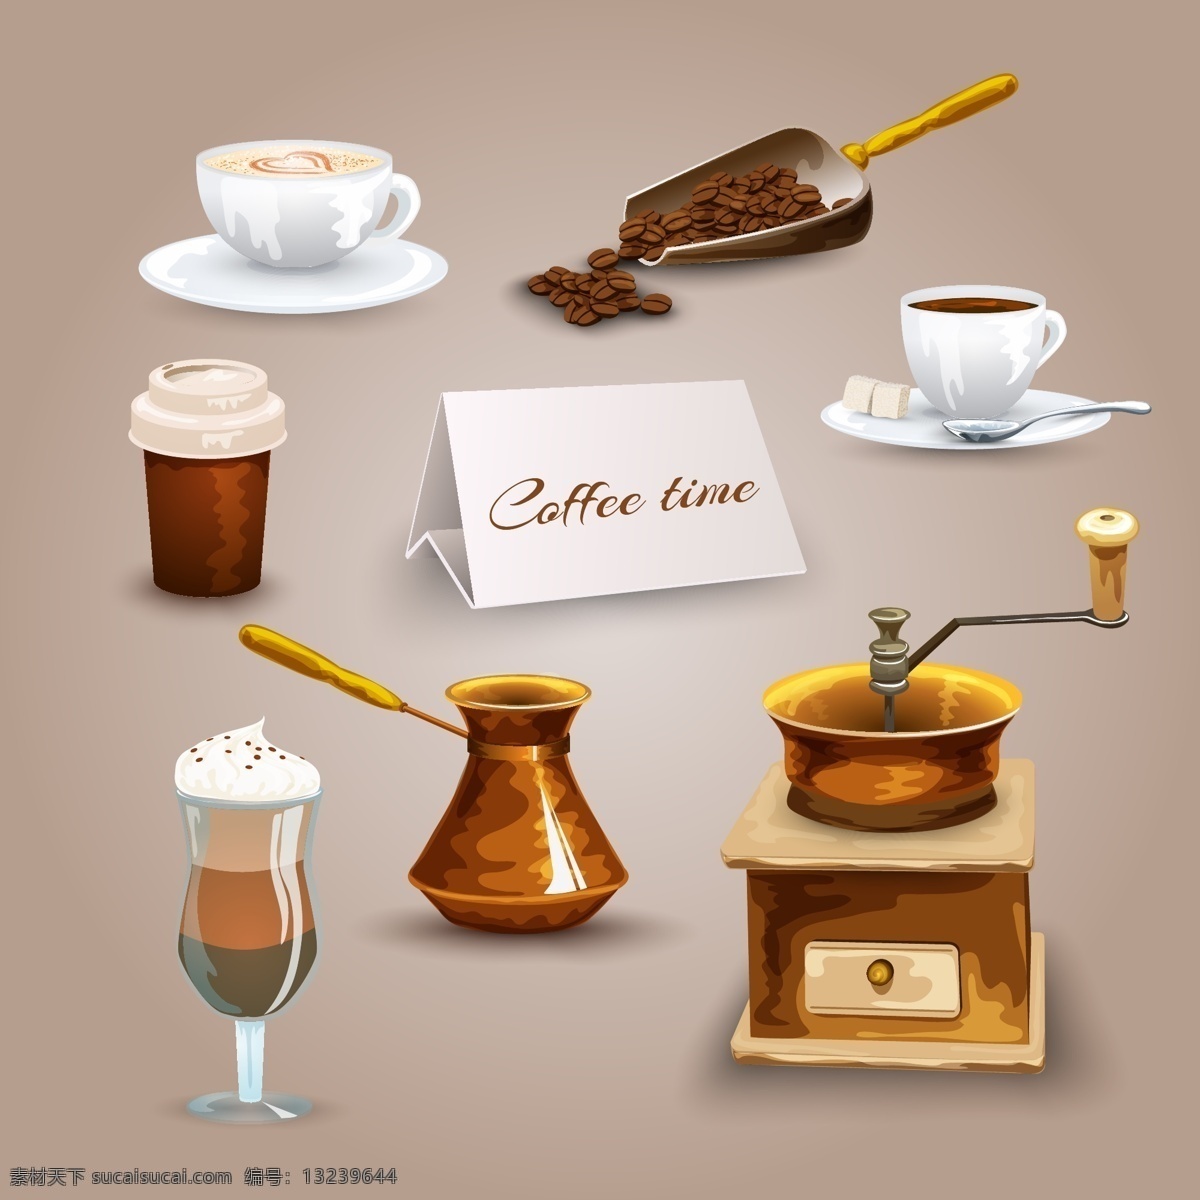 手绘 促销 咖啡 用品 插画 元素 咖啡豆 雪顶咖啡 咖啡机